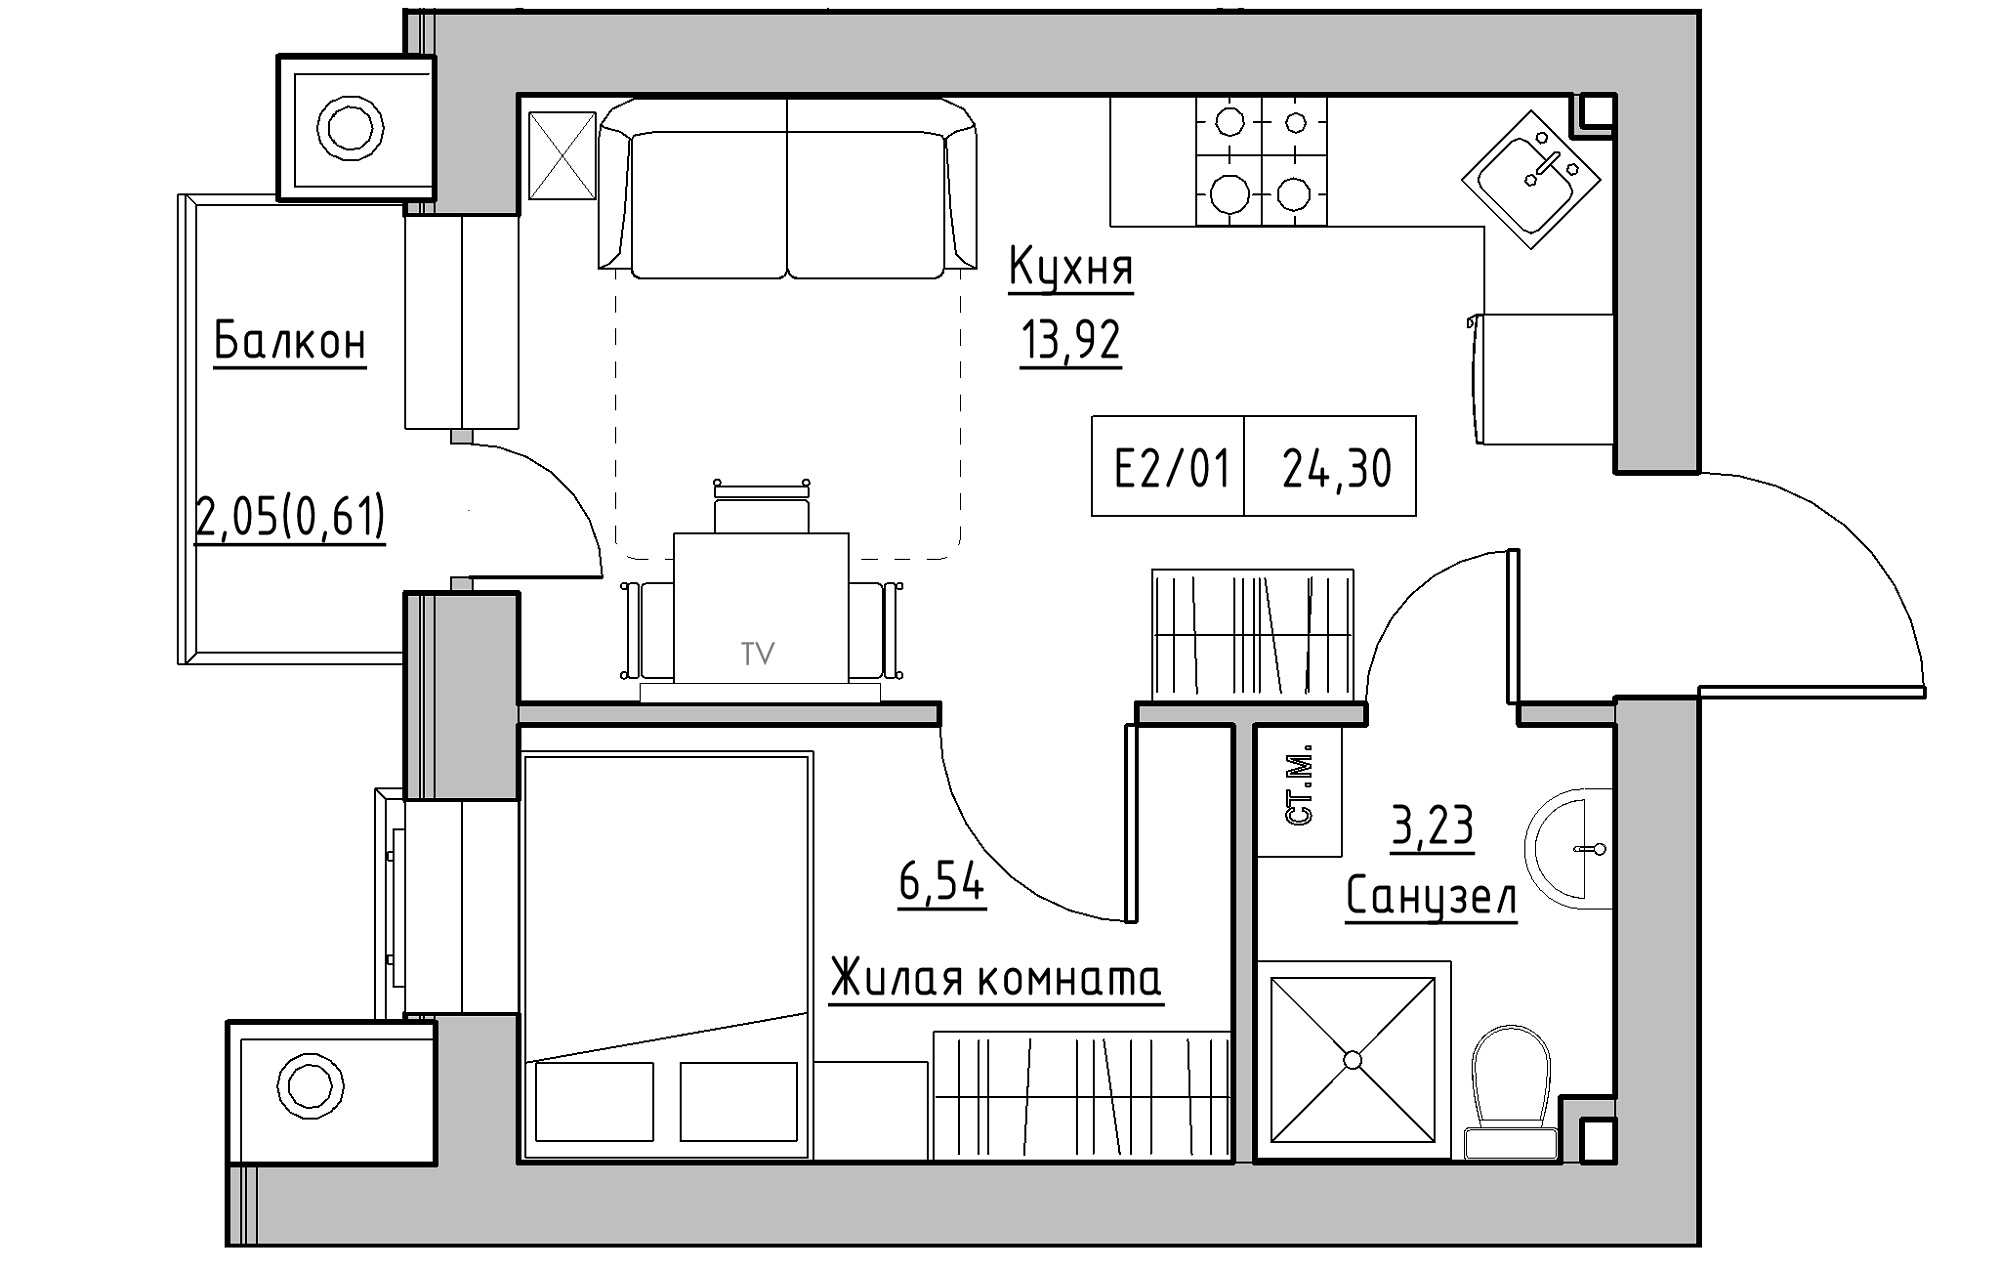 Планировка 1-к квартира площей 24.3м2, KS-013-03/0005.